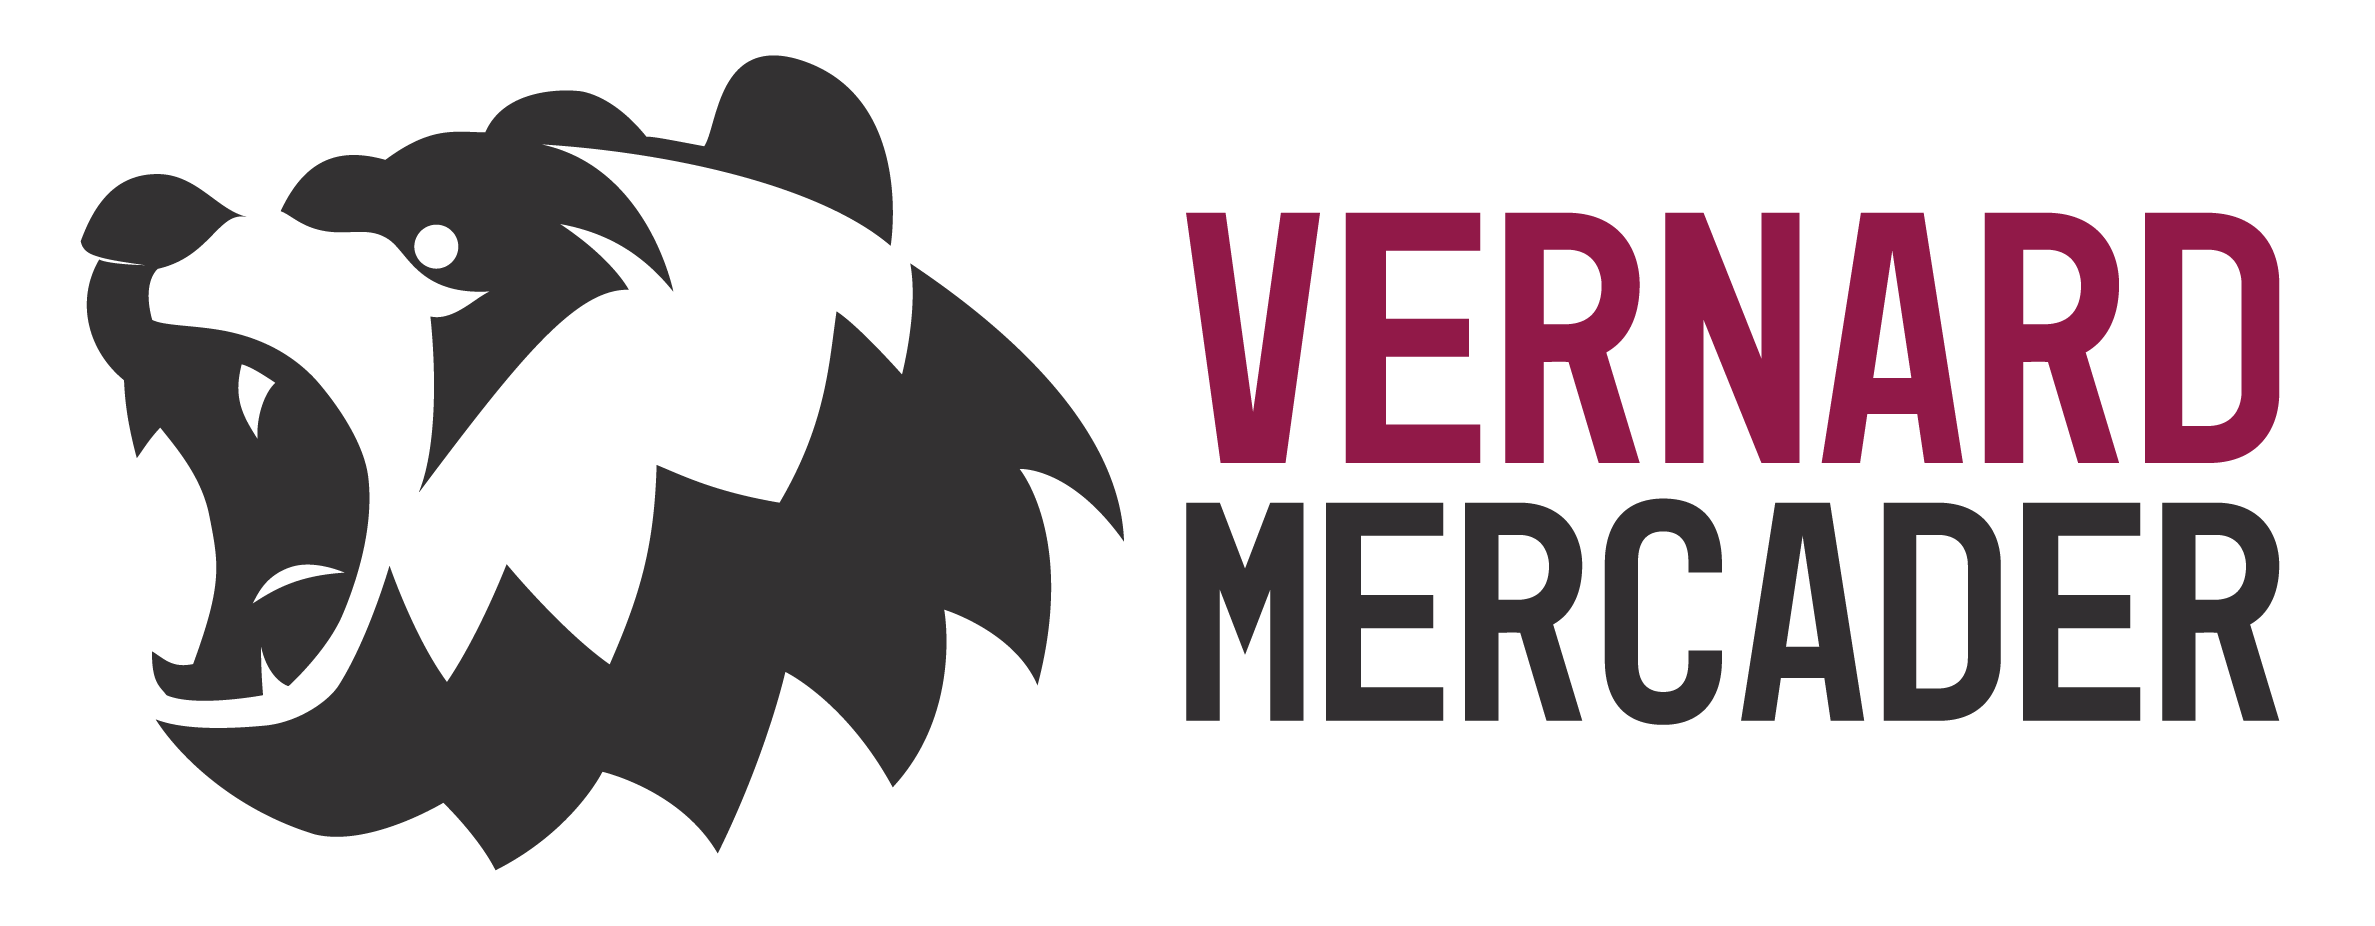 Vernard Mercader